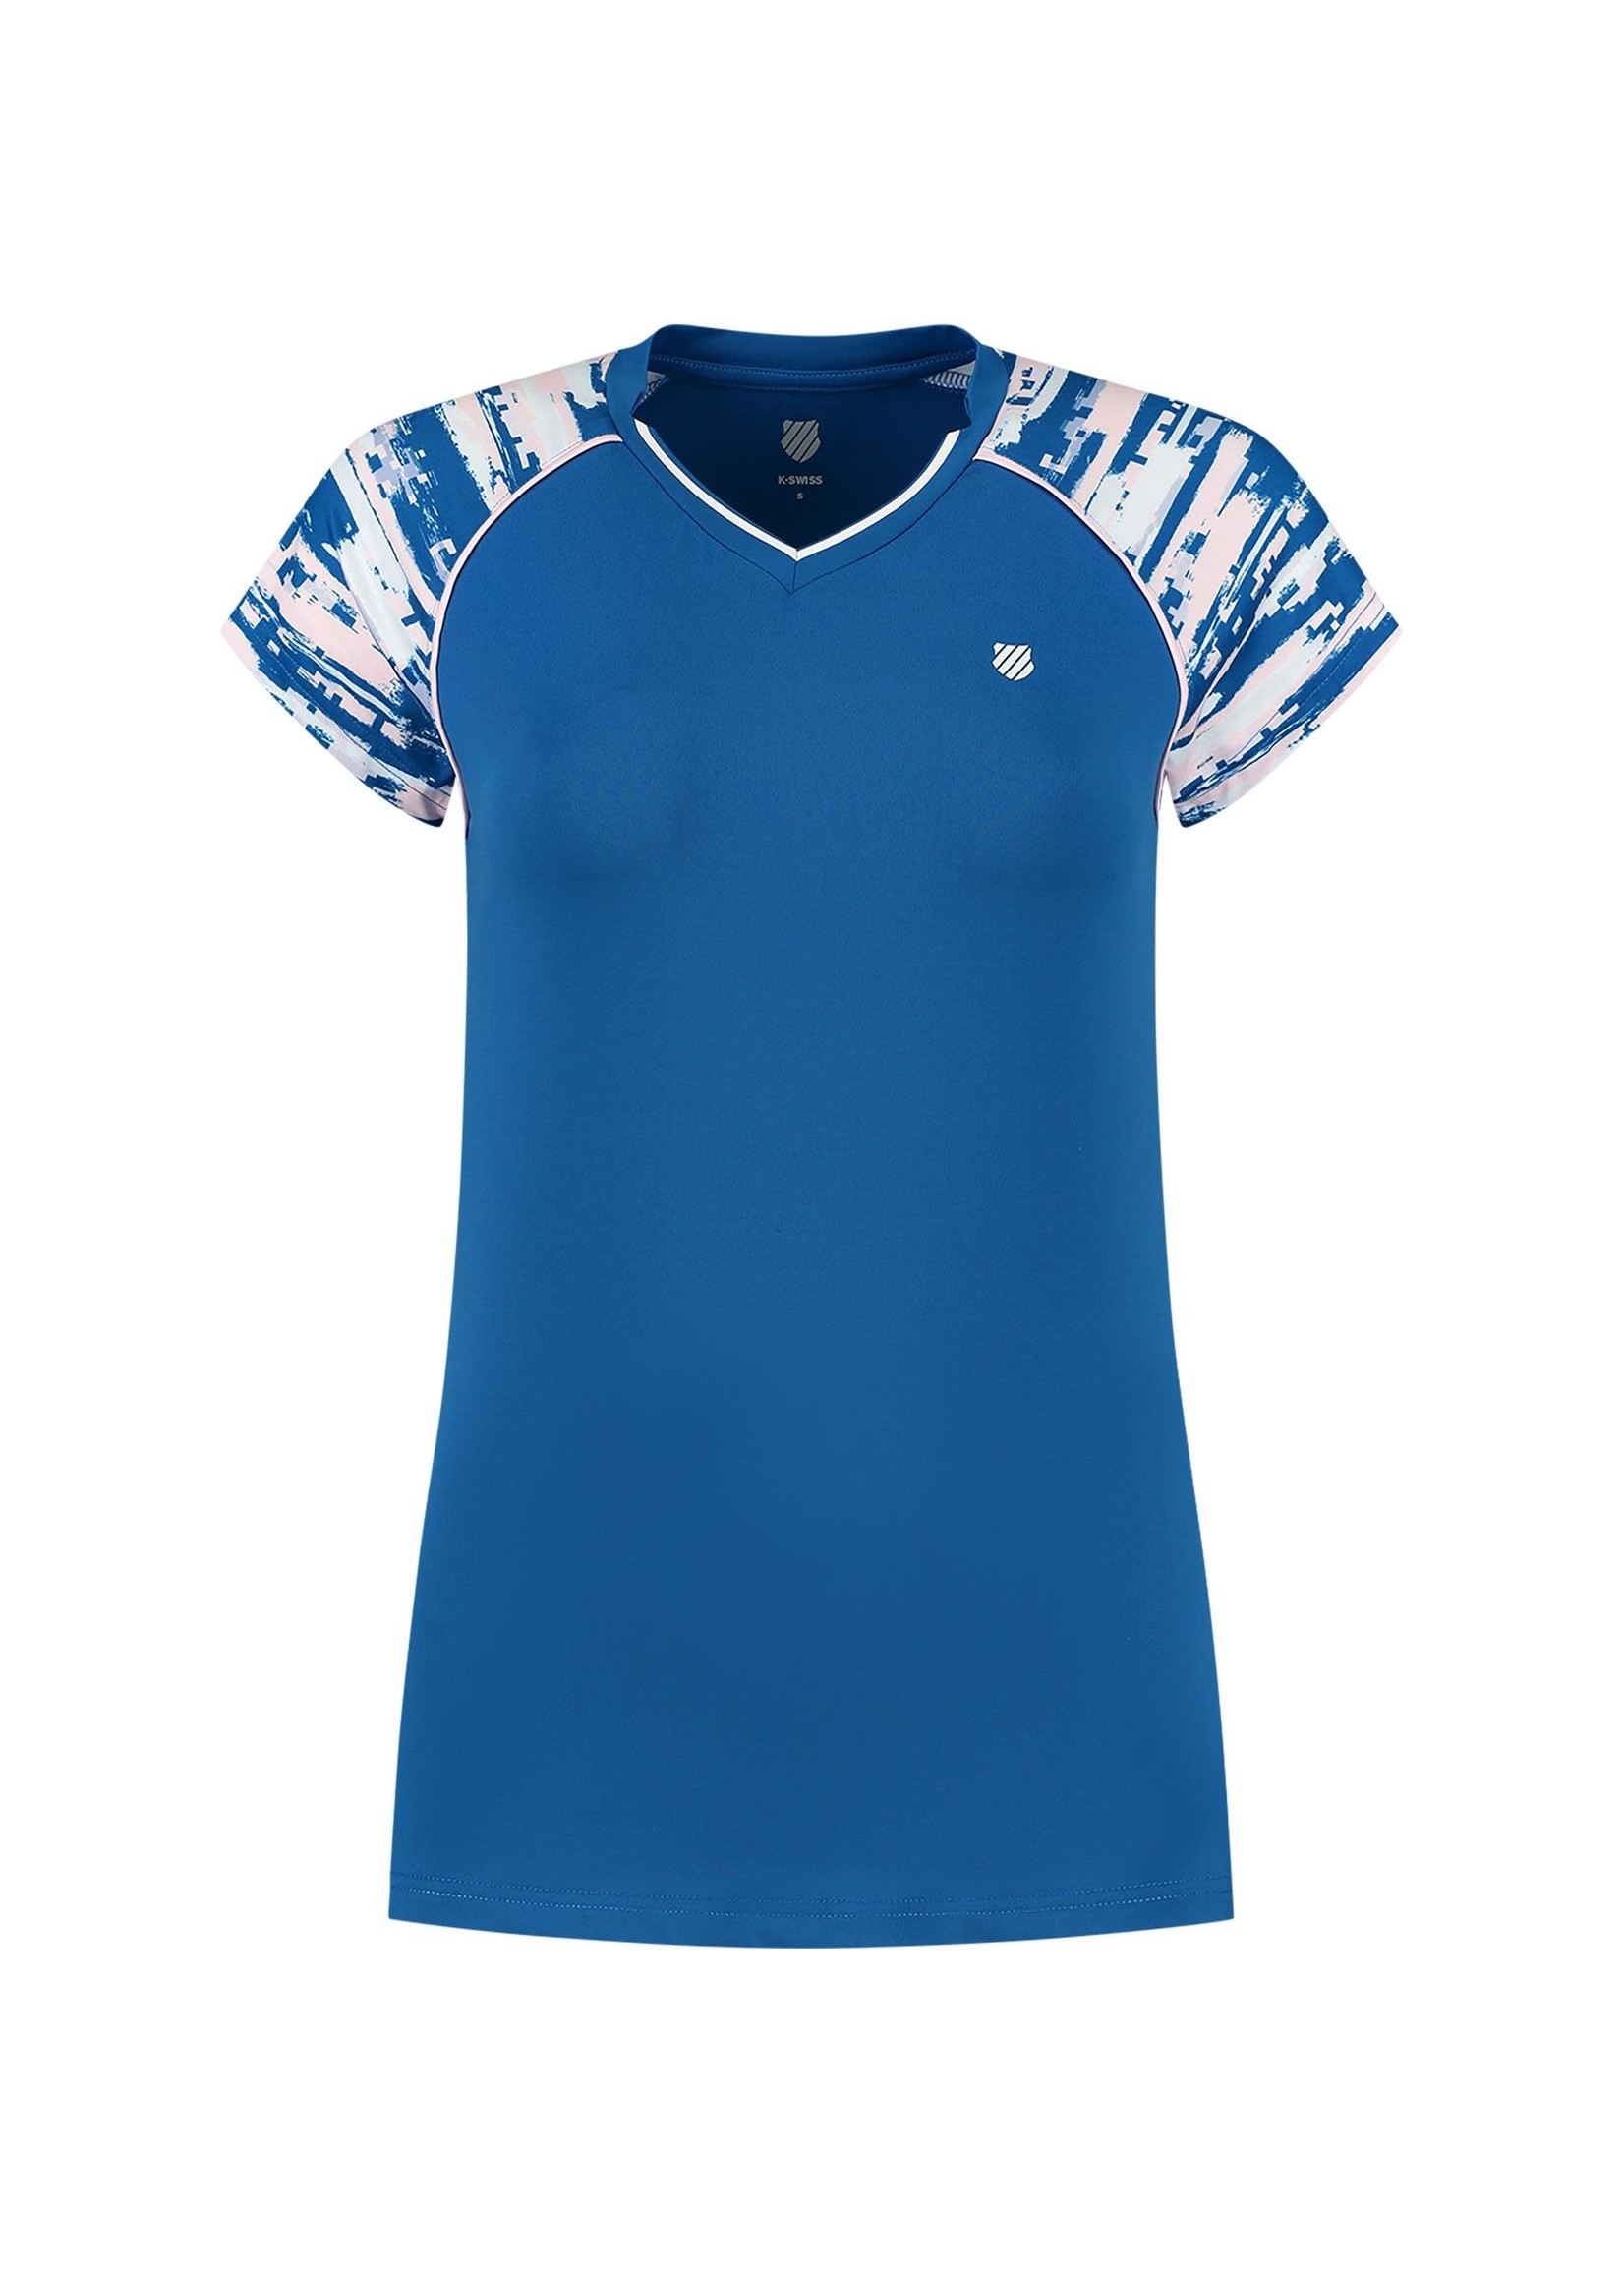 K Swiss K Swiss Hypercourt Cap Sleeve Ladies T Shirt - Blue (2022)